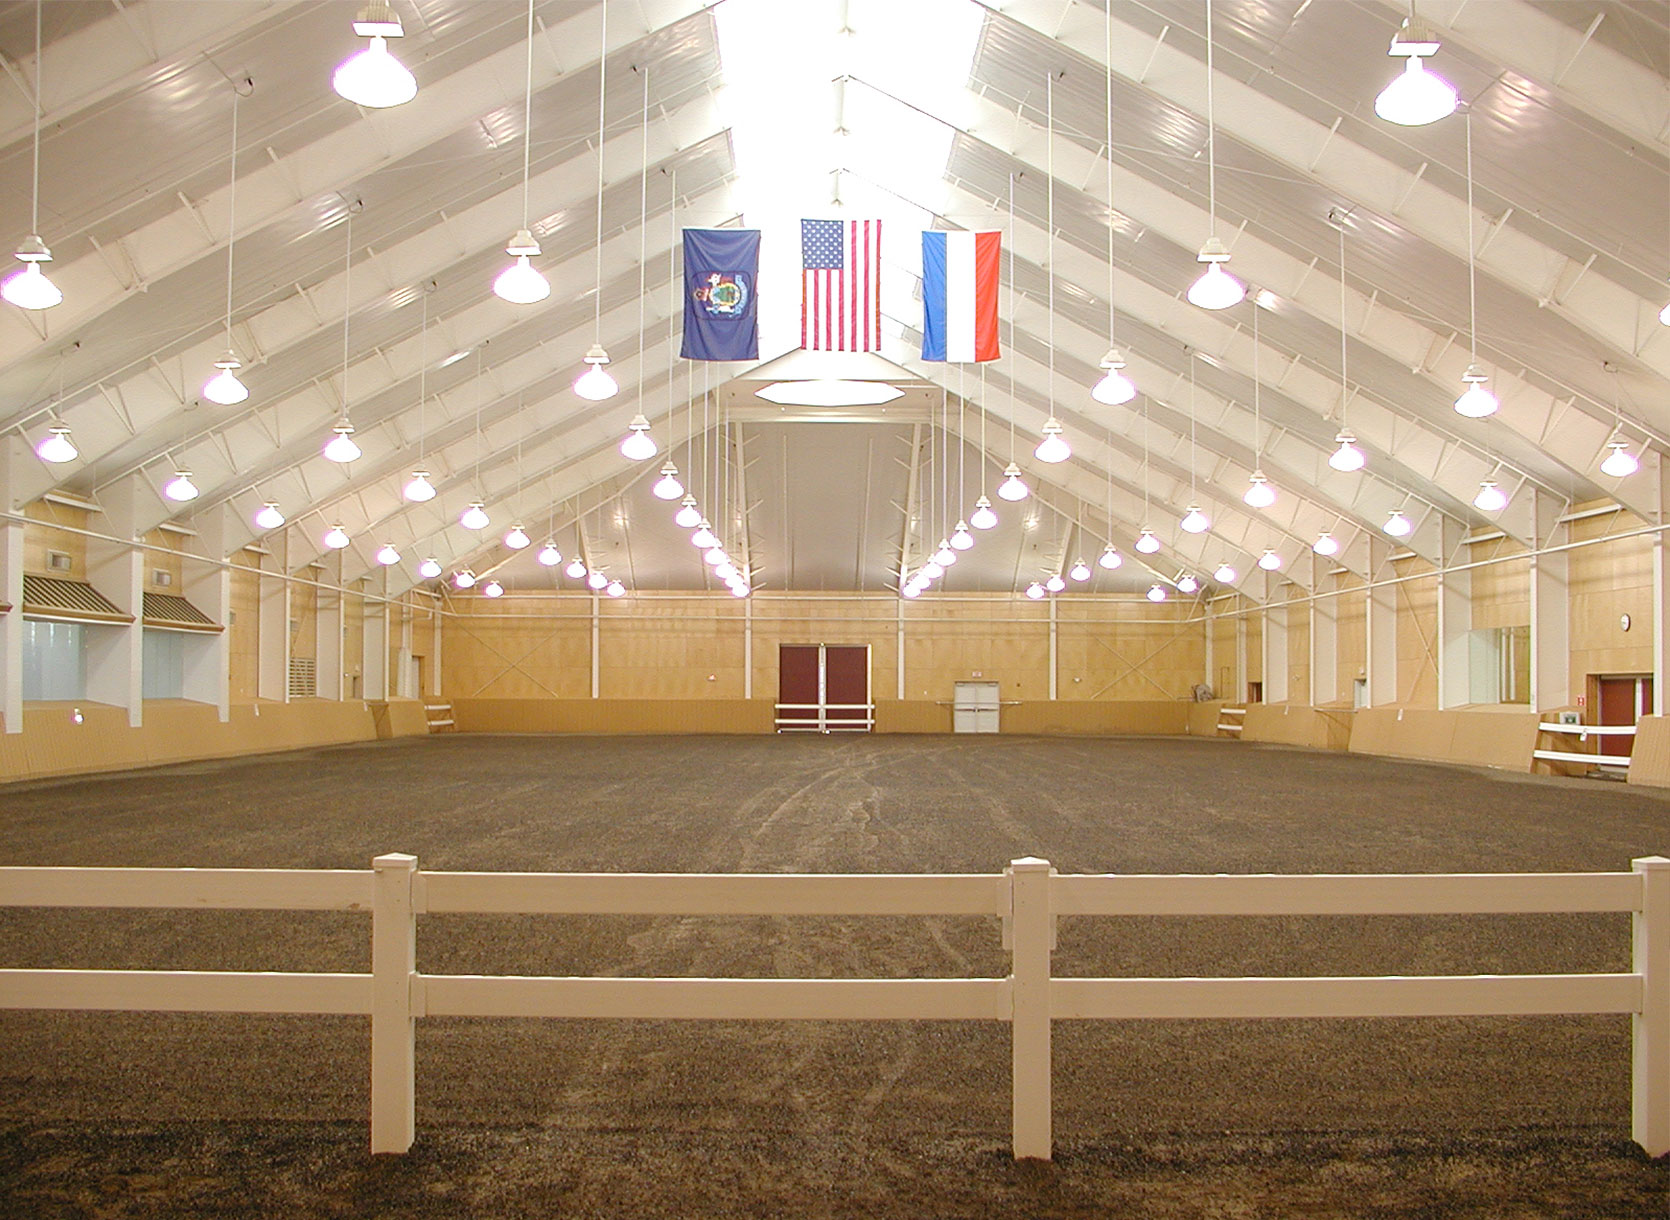 Equestrian center arena